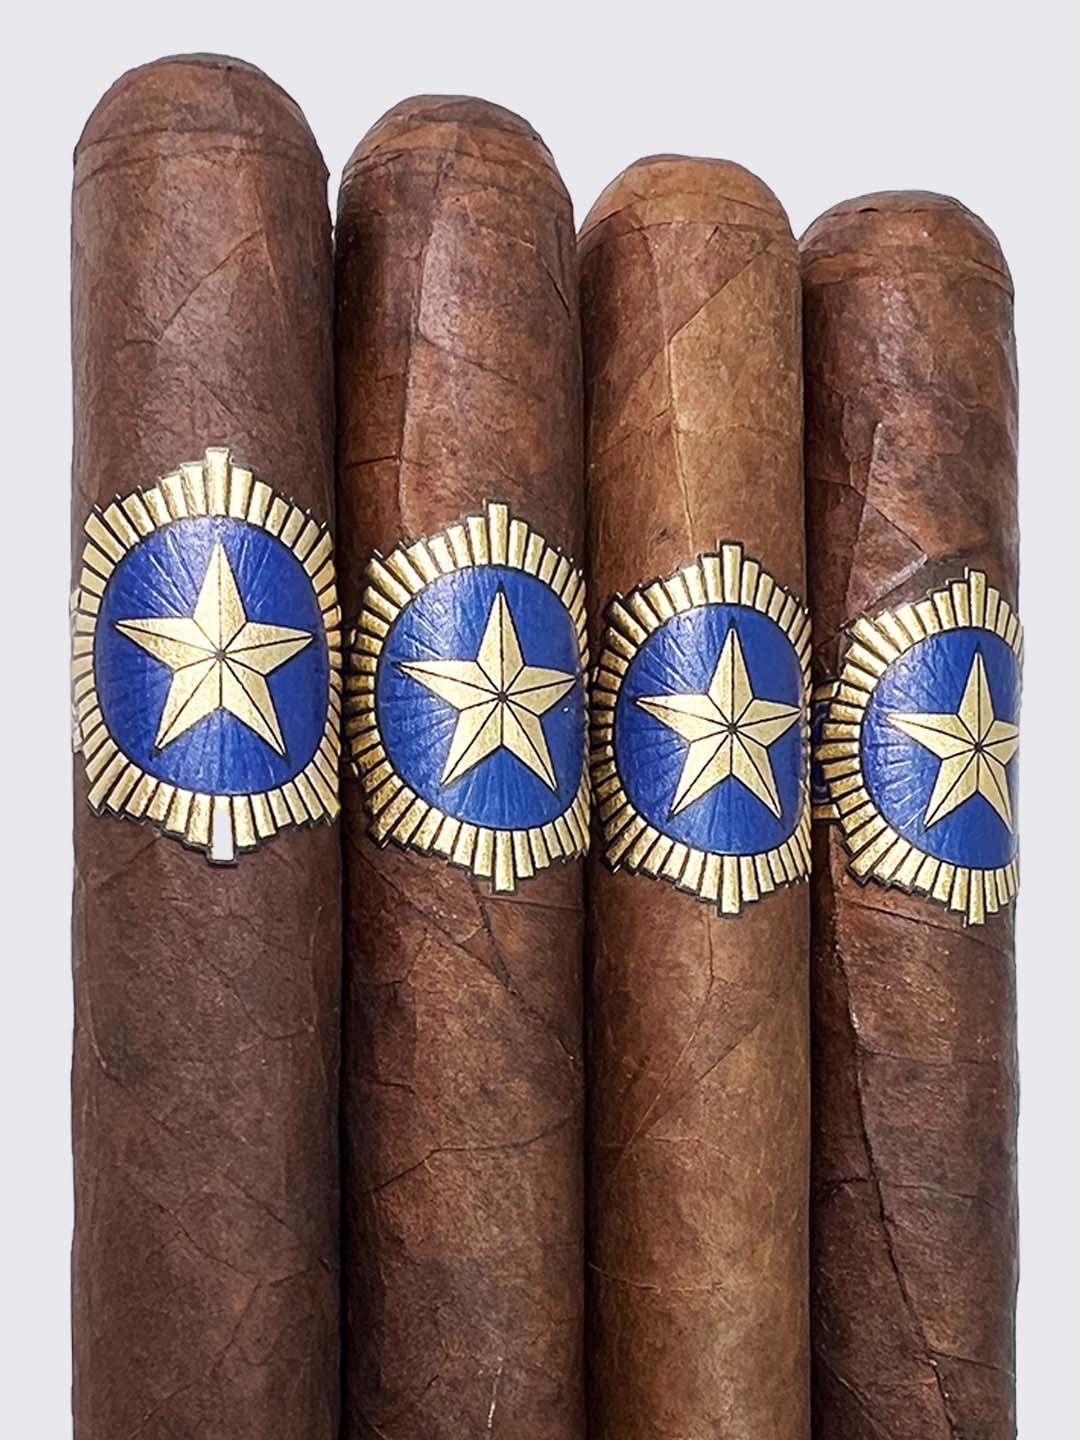 StillWell Star - A Cigar by Dunbarton Tobacco & Trust